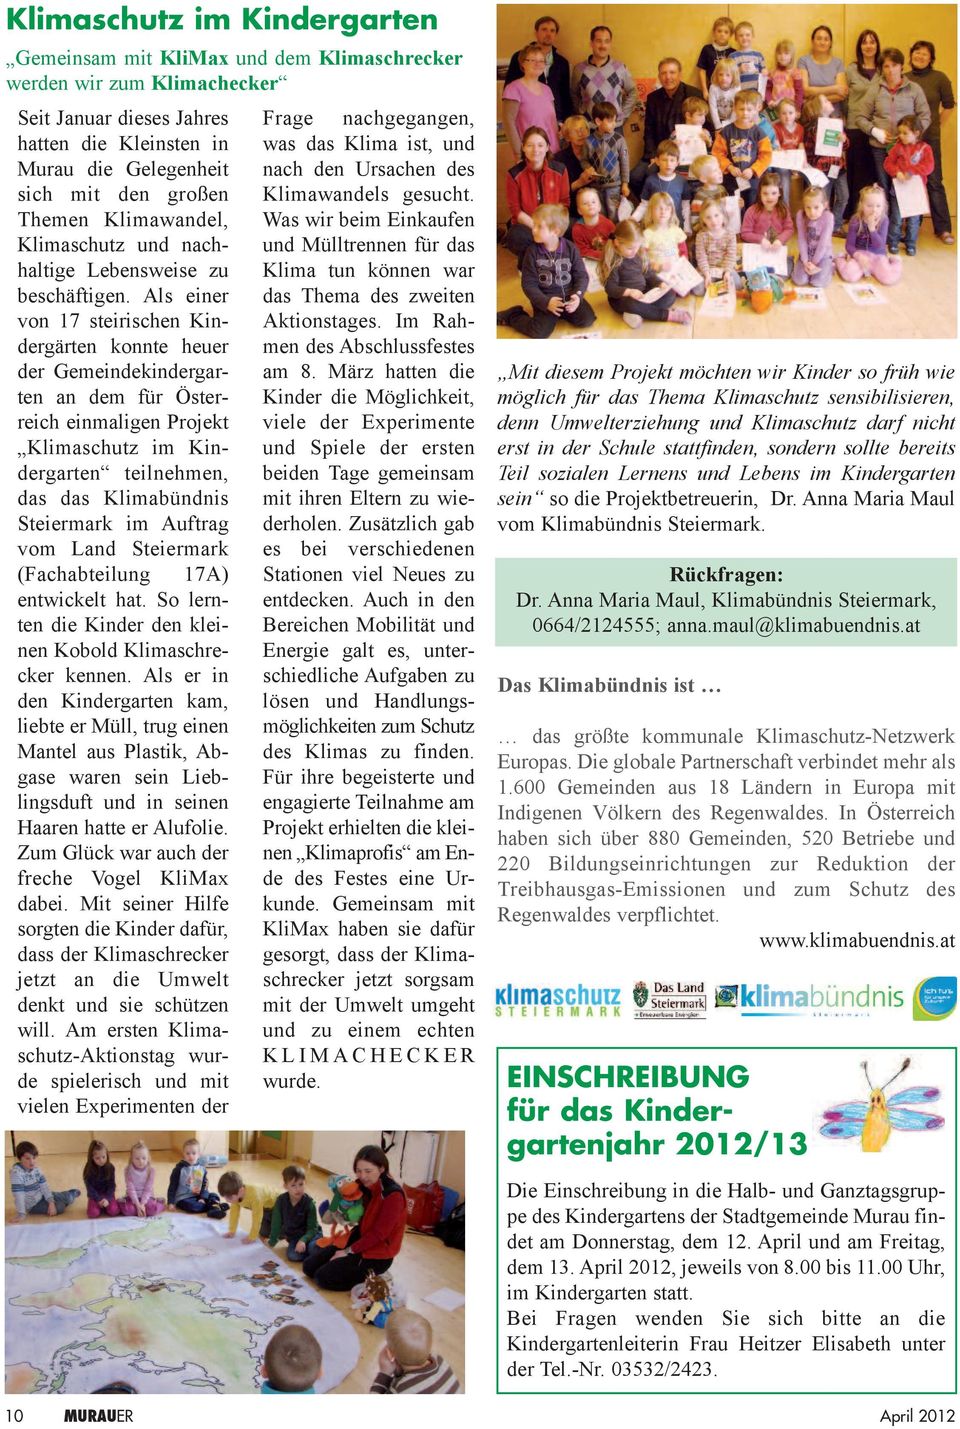 Als einer von 17 steirischen Kindergärten konnte heuer der Gemeindekindergarten an dem für Österreich einmaligen Projekt Klimaschutz im Kindergarten teilnehmen, das das Klimabündnis Steiermark im